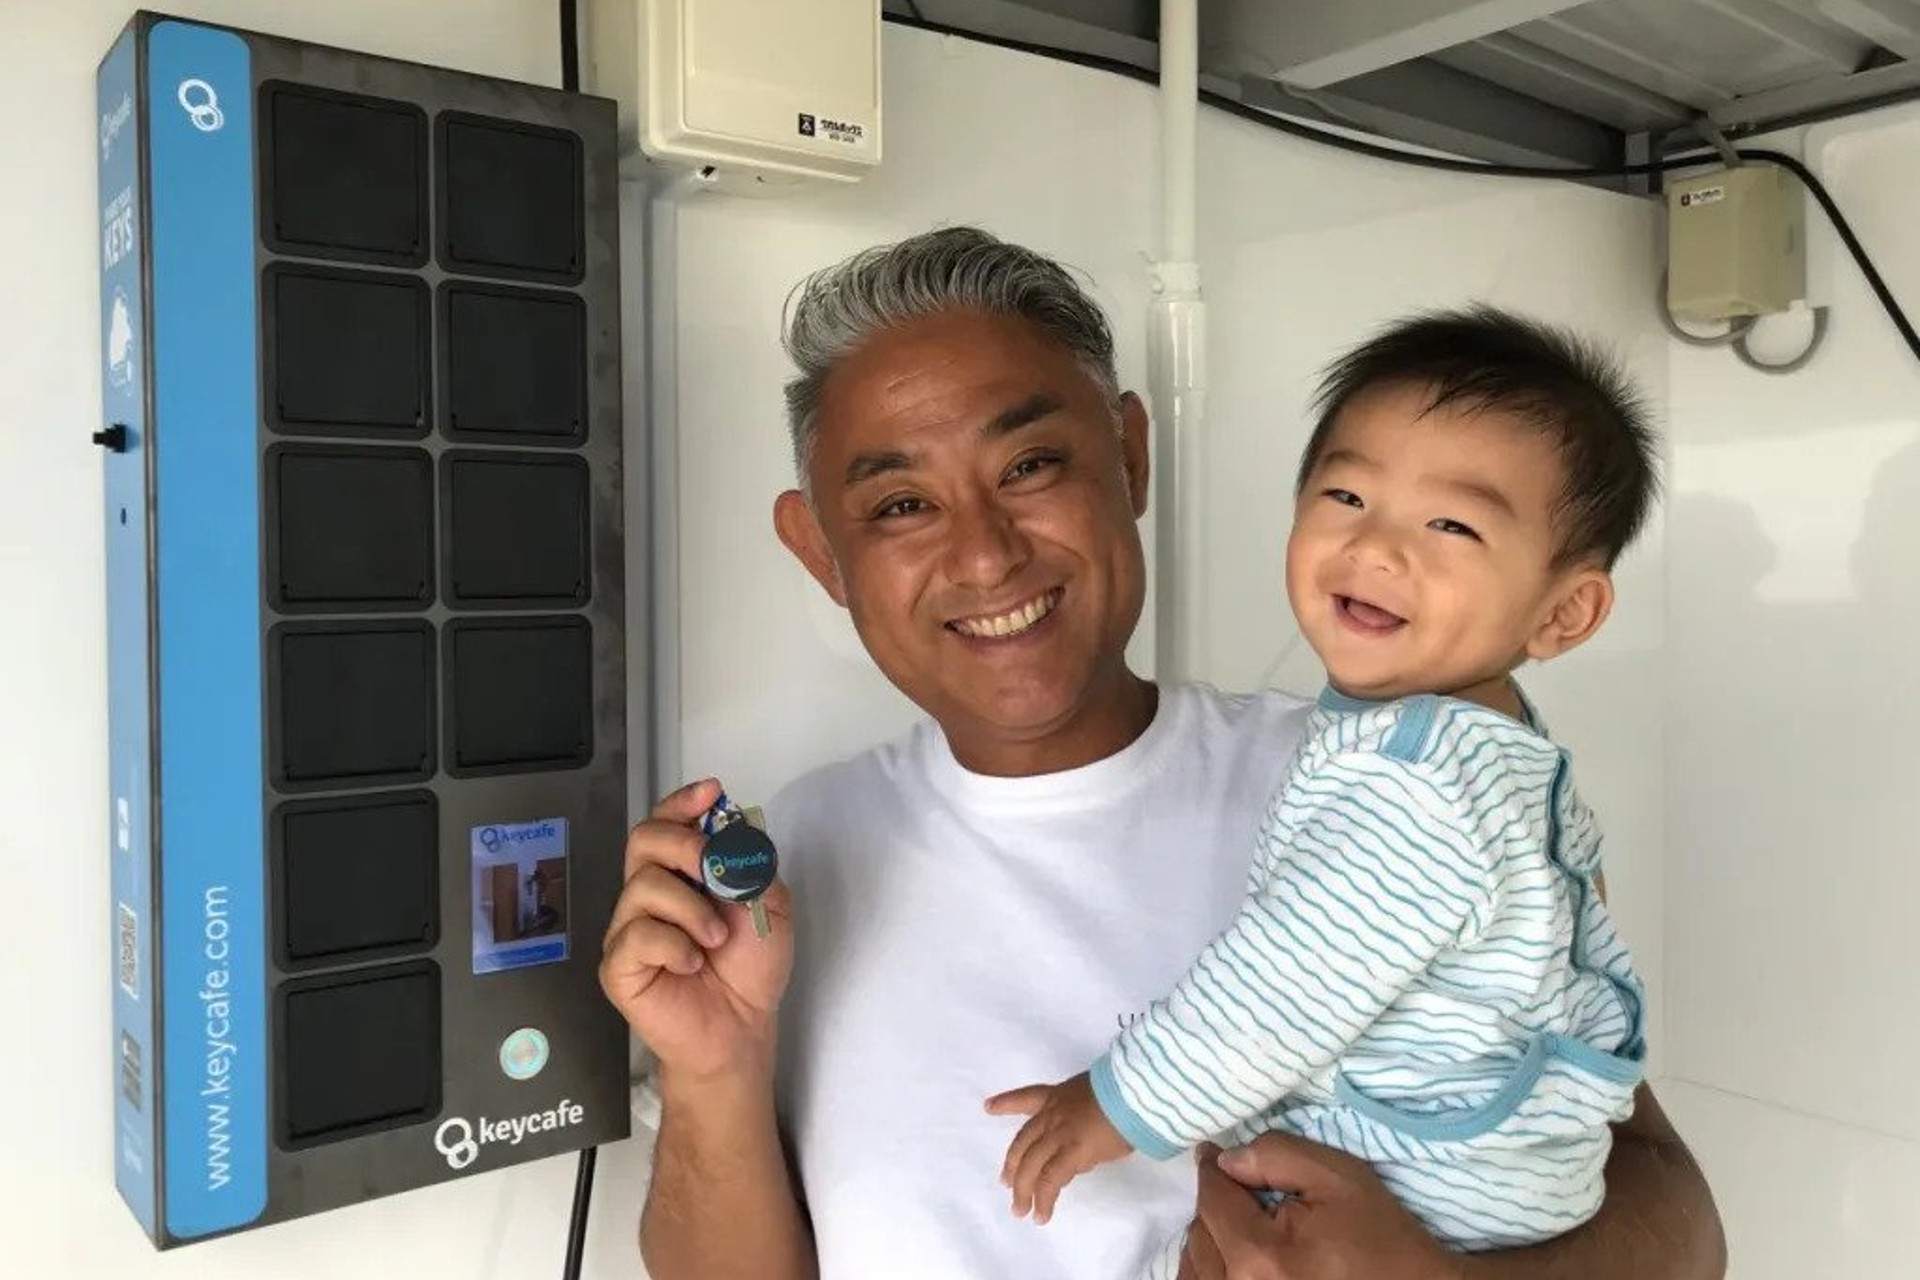 Uruma Dome à Okinawa utilise Keycafe pour l'enregistrement des clients